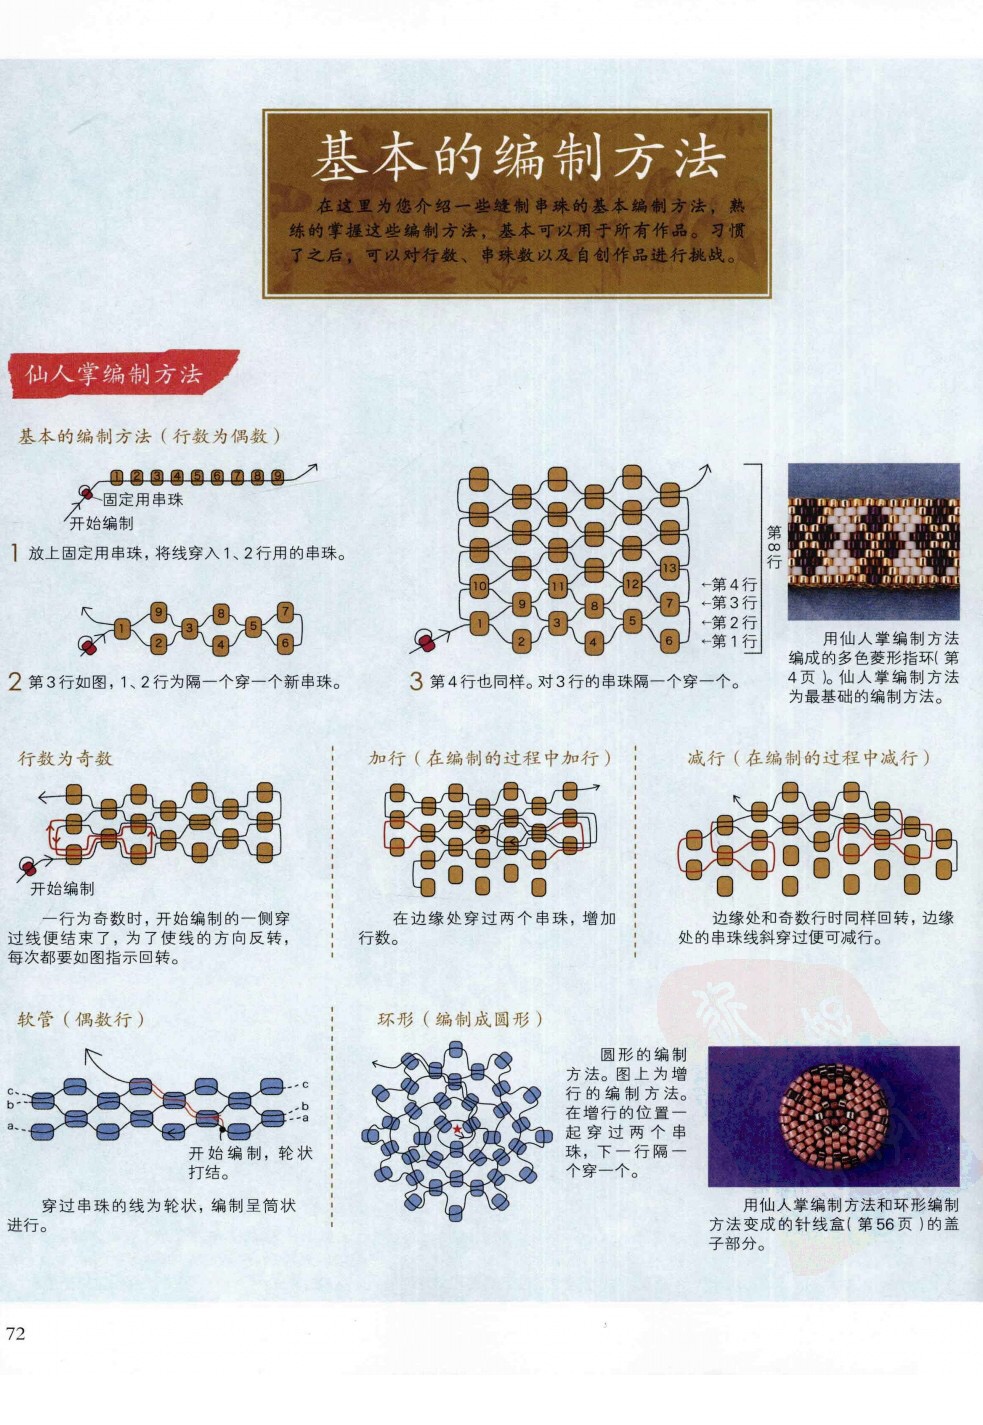 日本古董珠串珠图解图片